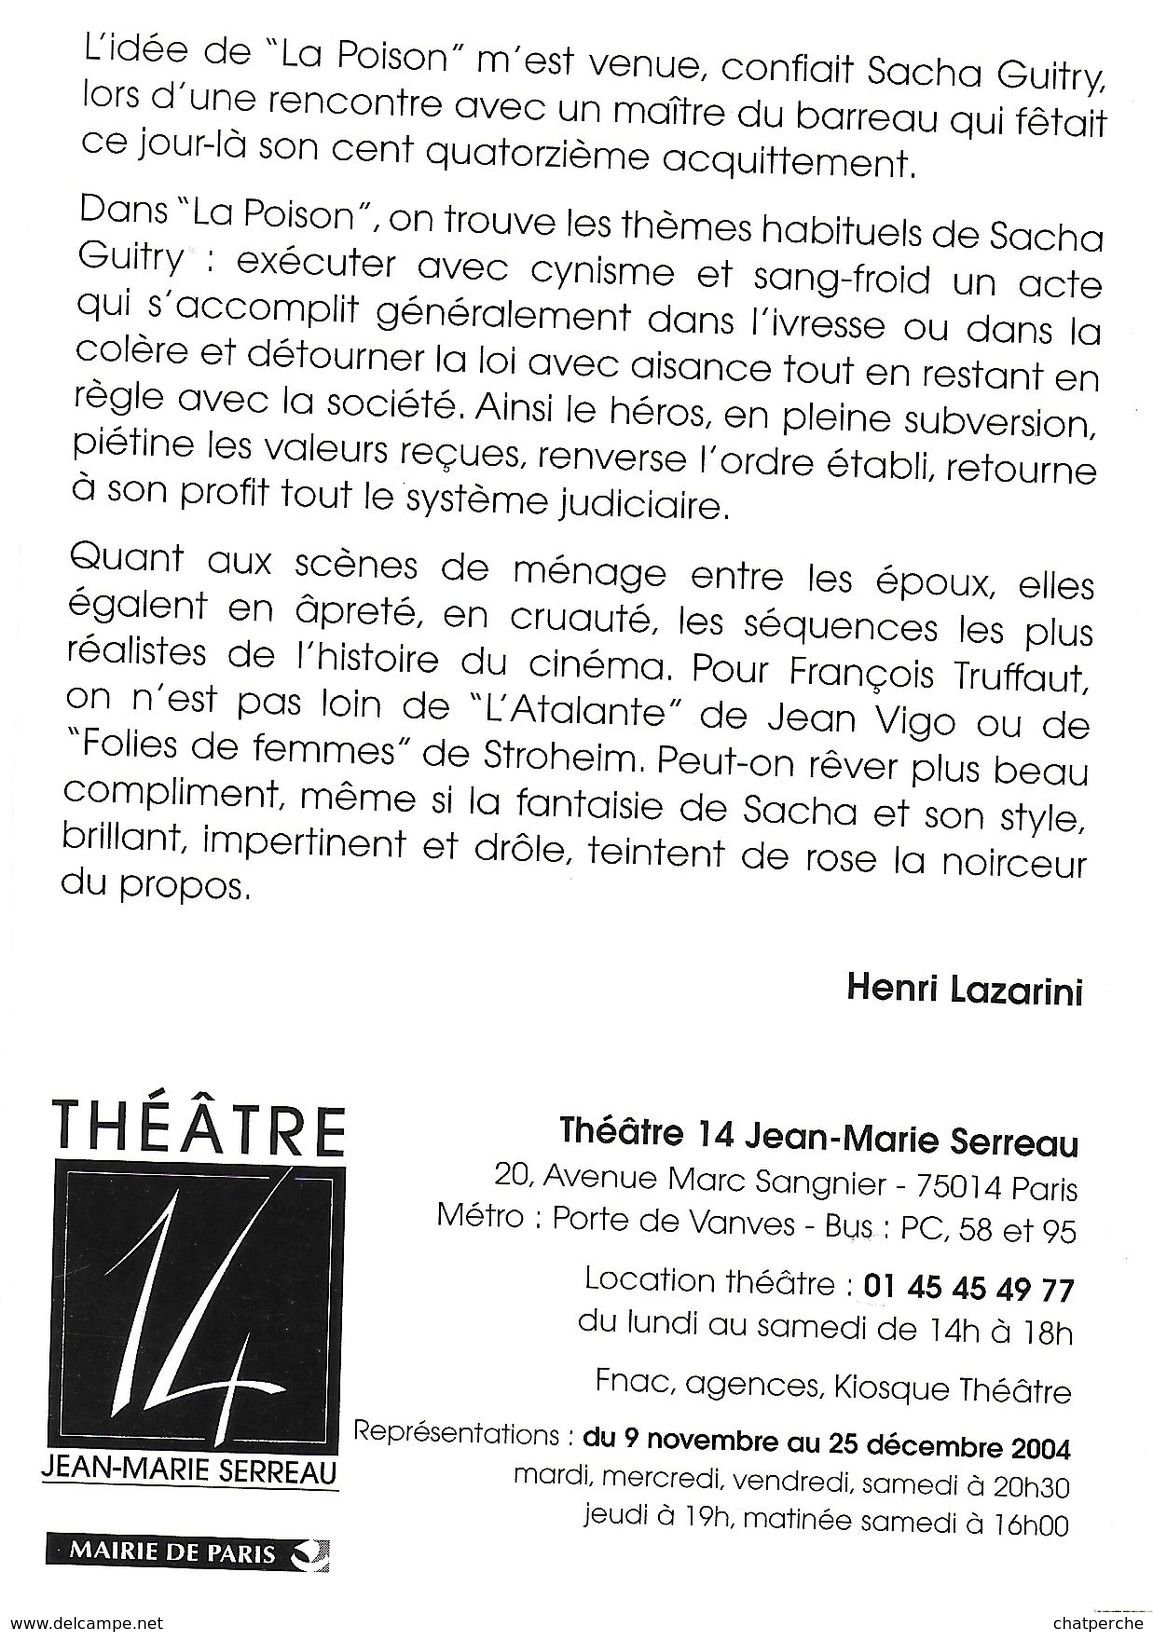 SPECTACLE THEATRE   LA POISON ILLUSTRATEUR LEO KOUPEUR POMME COUTEAU  THEATRE 14 J-M SERREAU PARIS - Theater